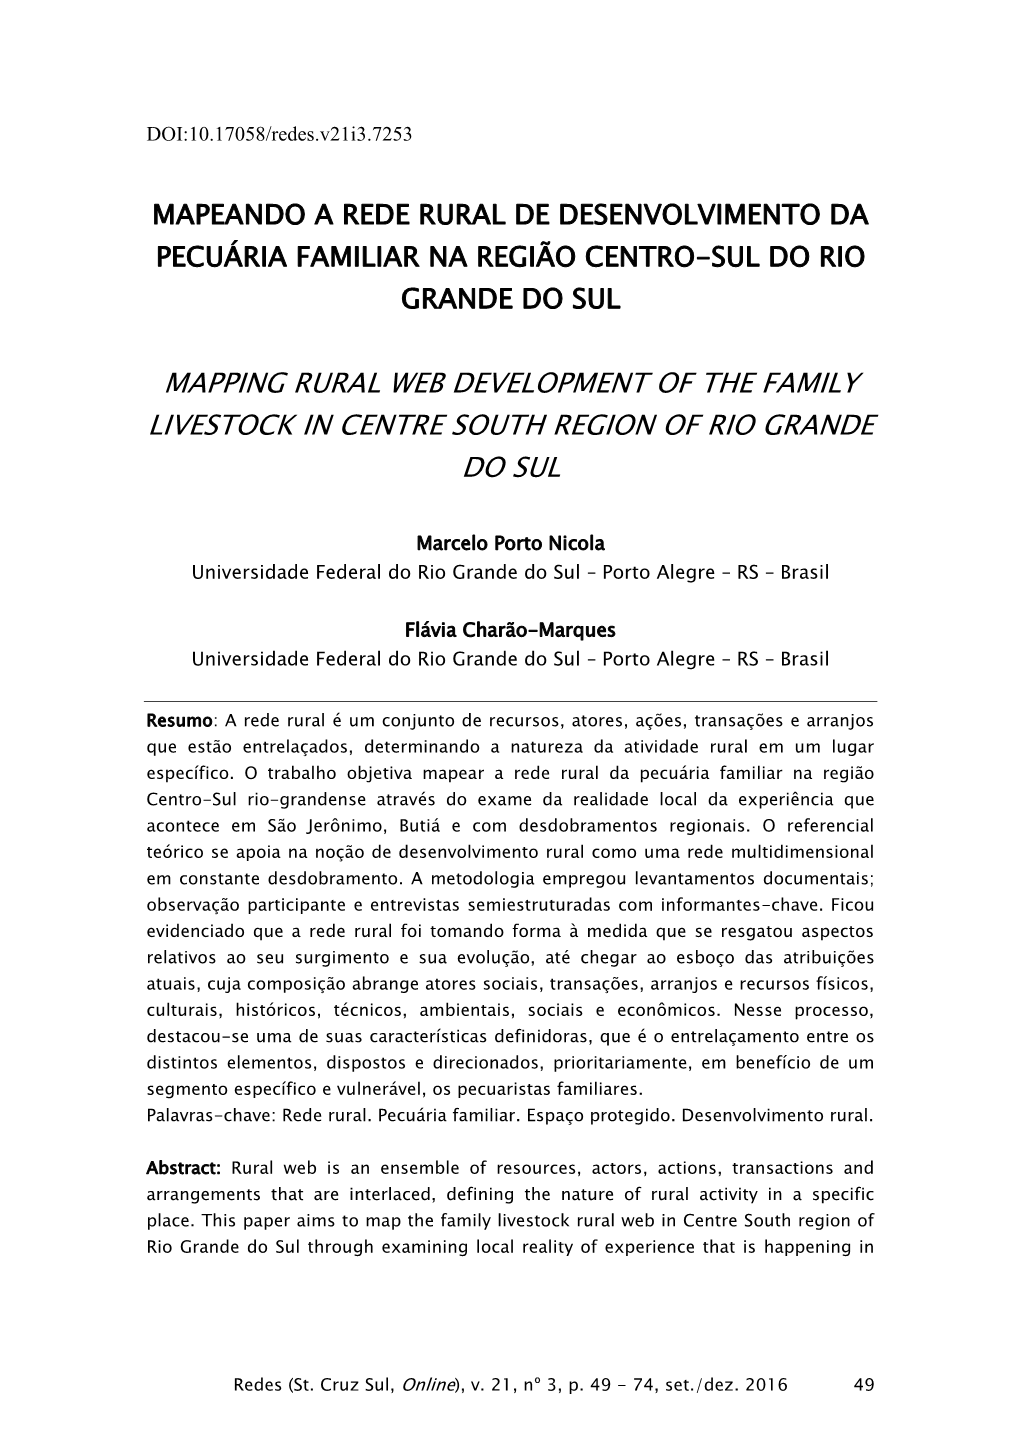 Mapping Rural Web Development of the Family Livestock in Centre South Region of Rio Grande Do Sul